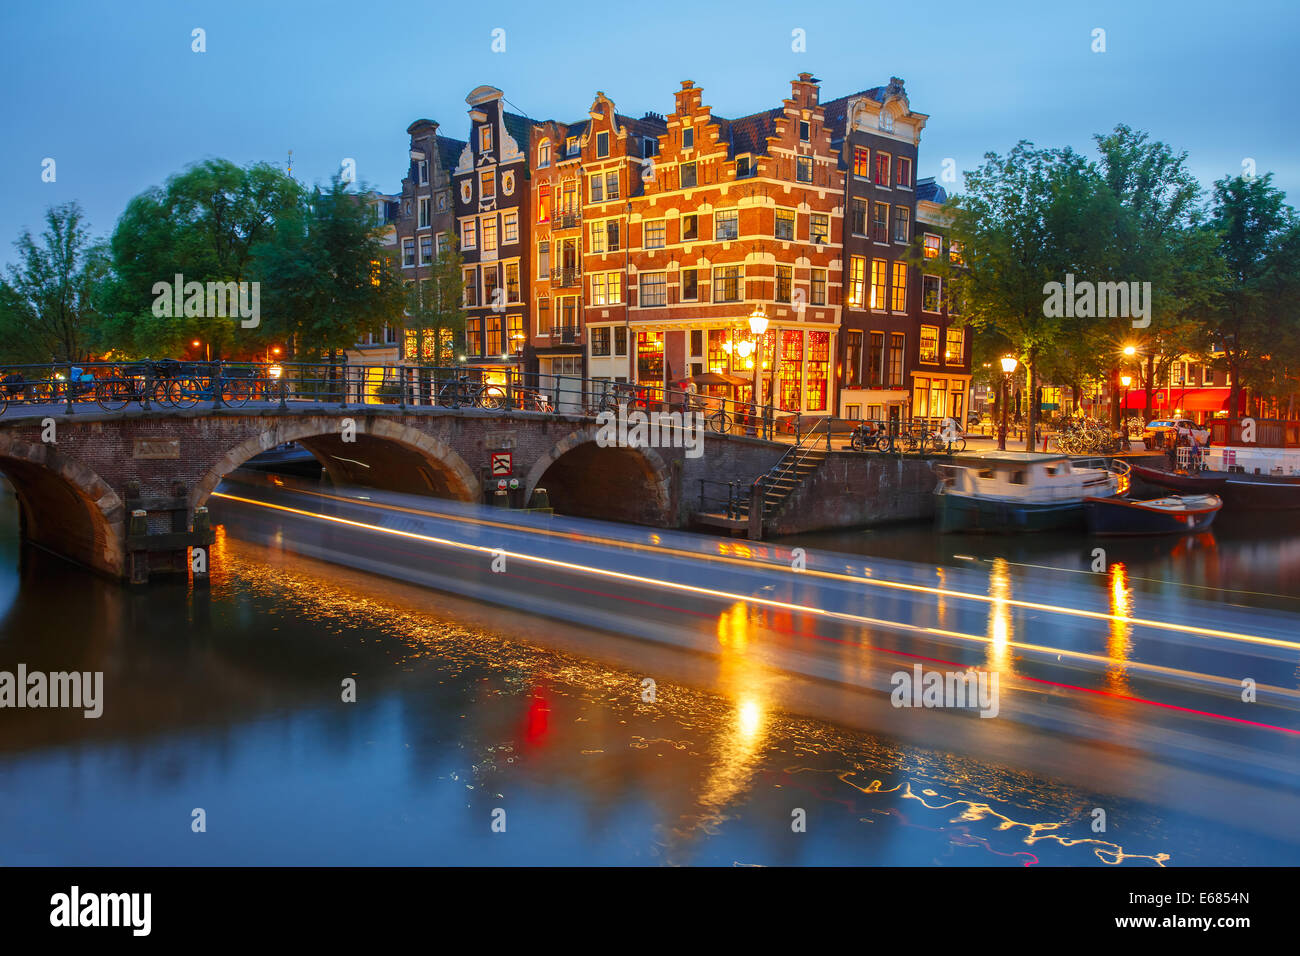 Notte Vista sulla città di Amsterdam canal, il ponte e le tipiche case, barche e biciclette, Holland, Paesi Bassi. Foto Stock